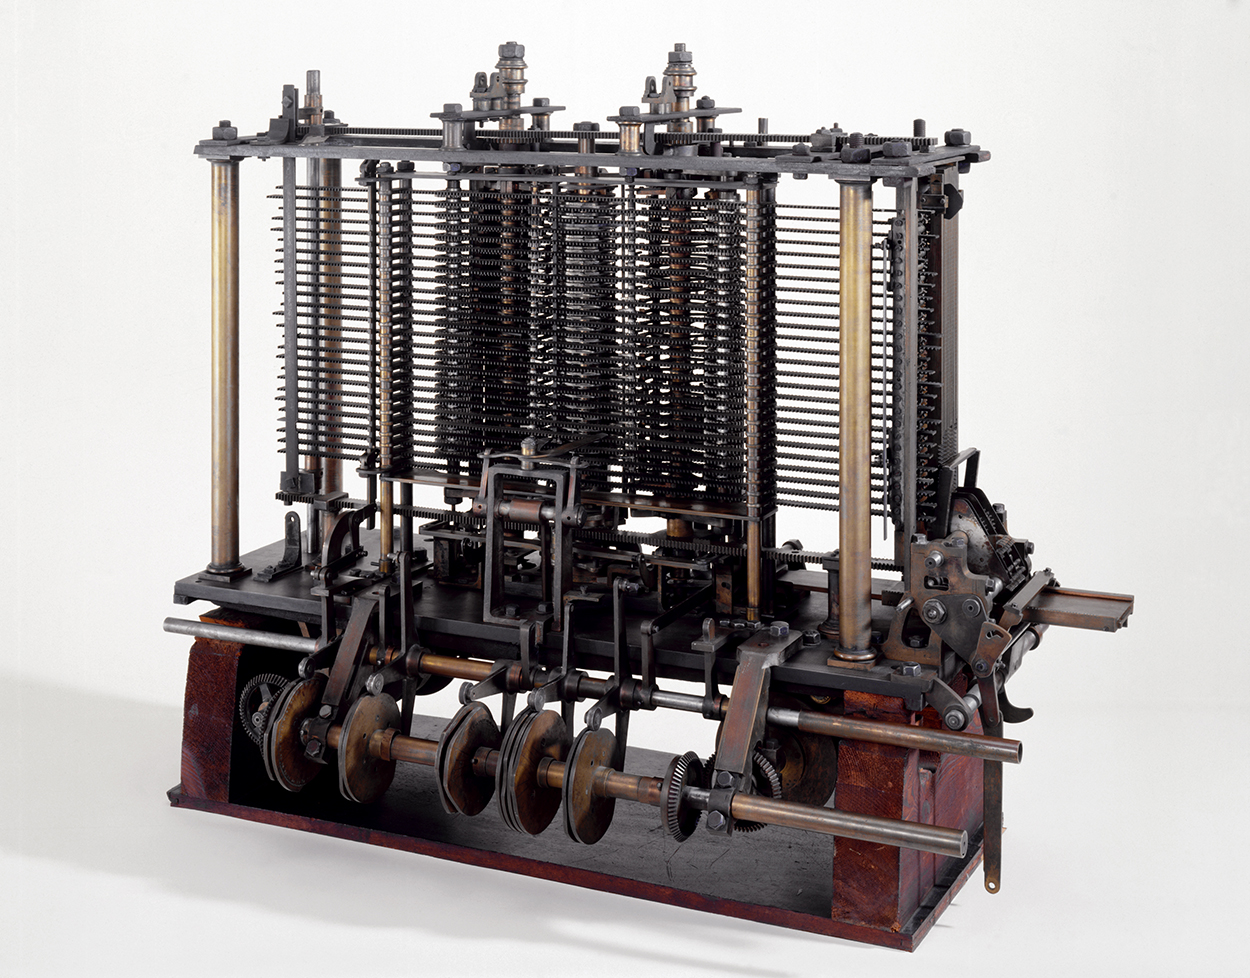 Teil von Charles Babbages Analytical Engine